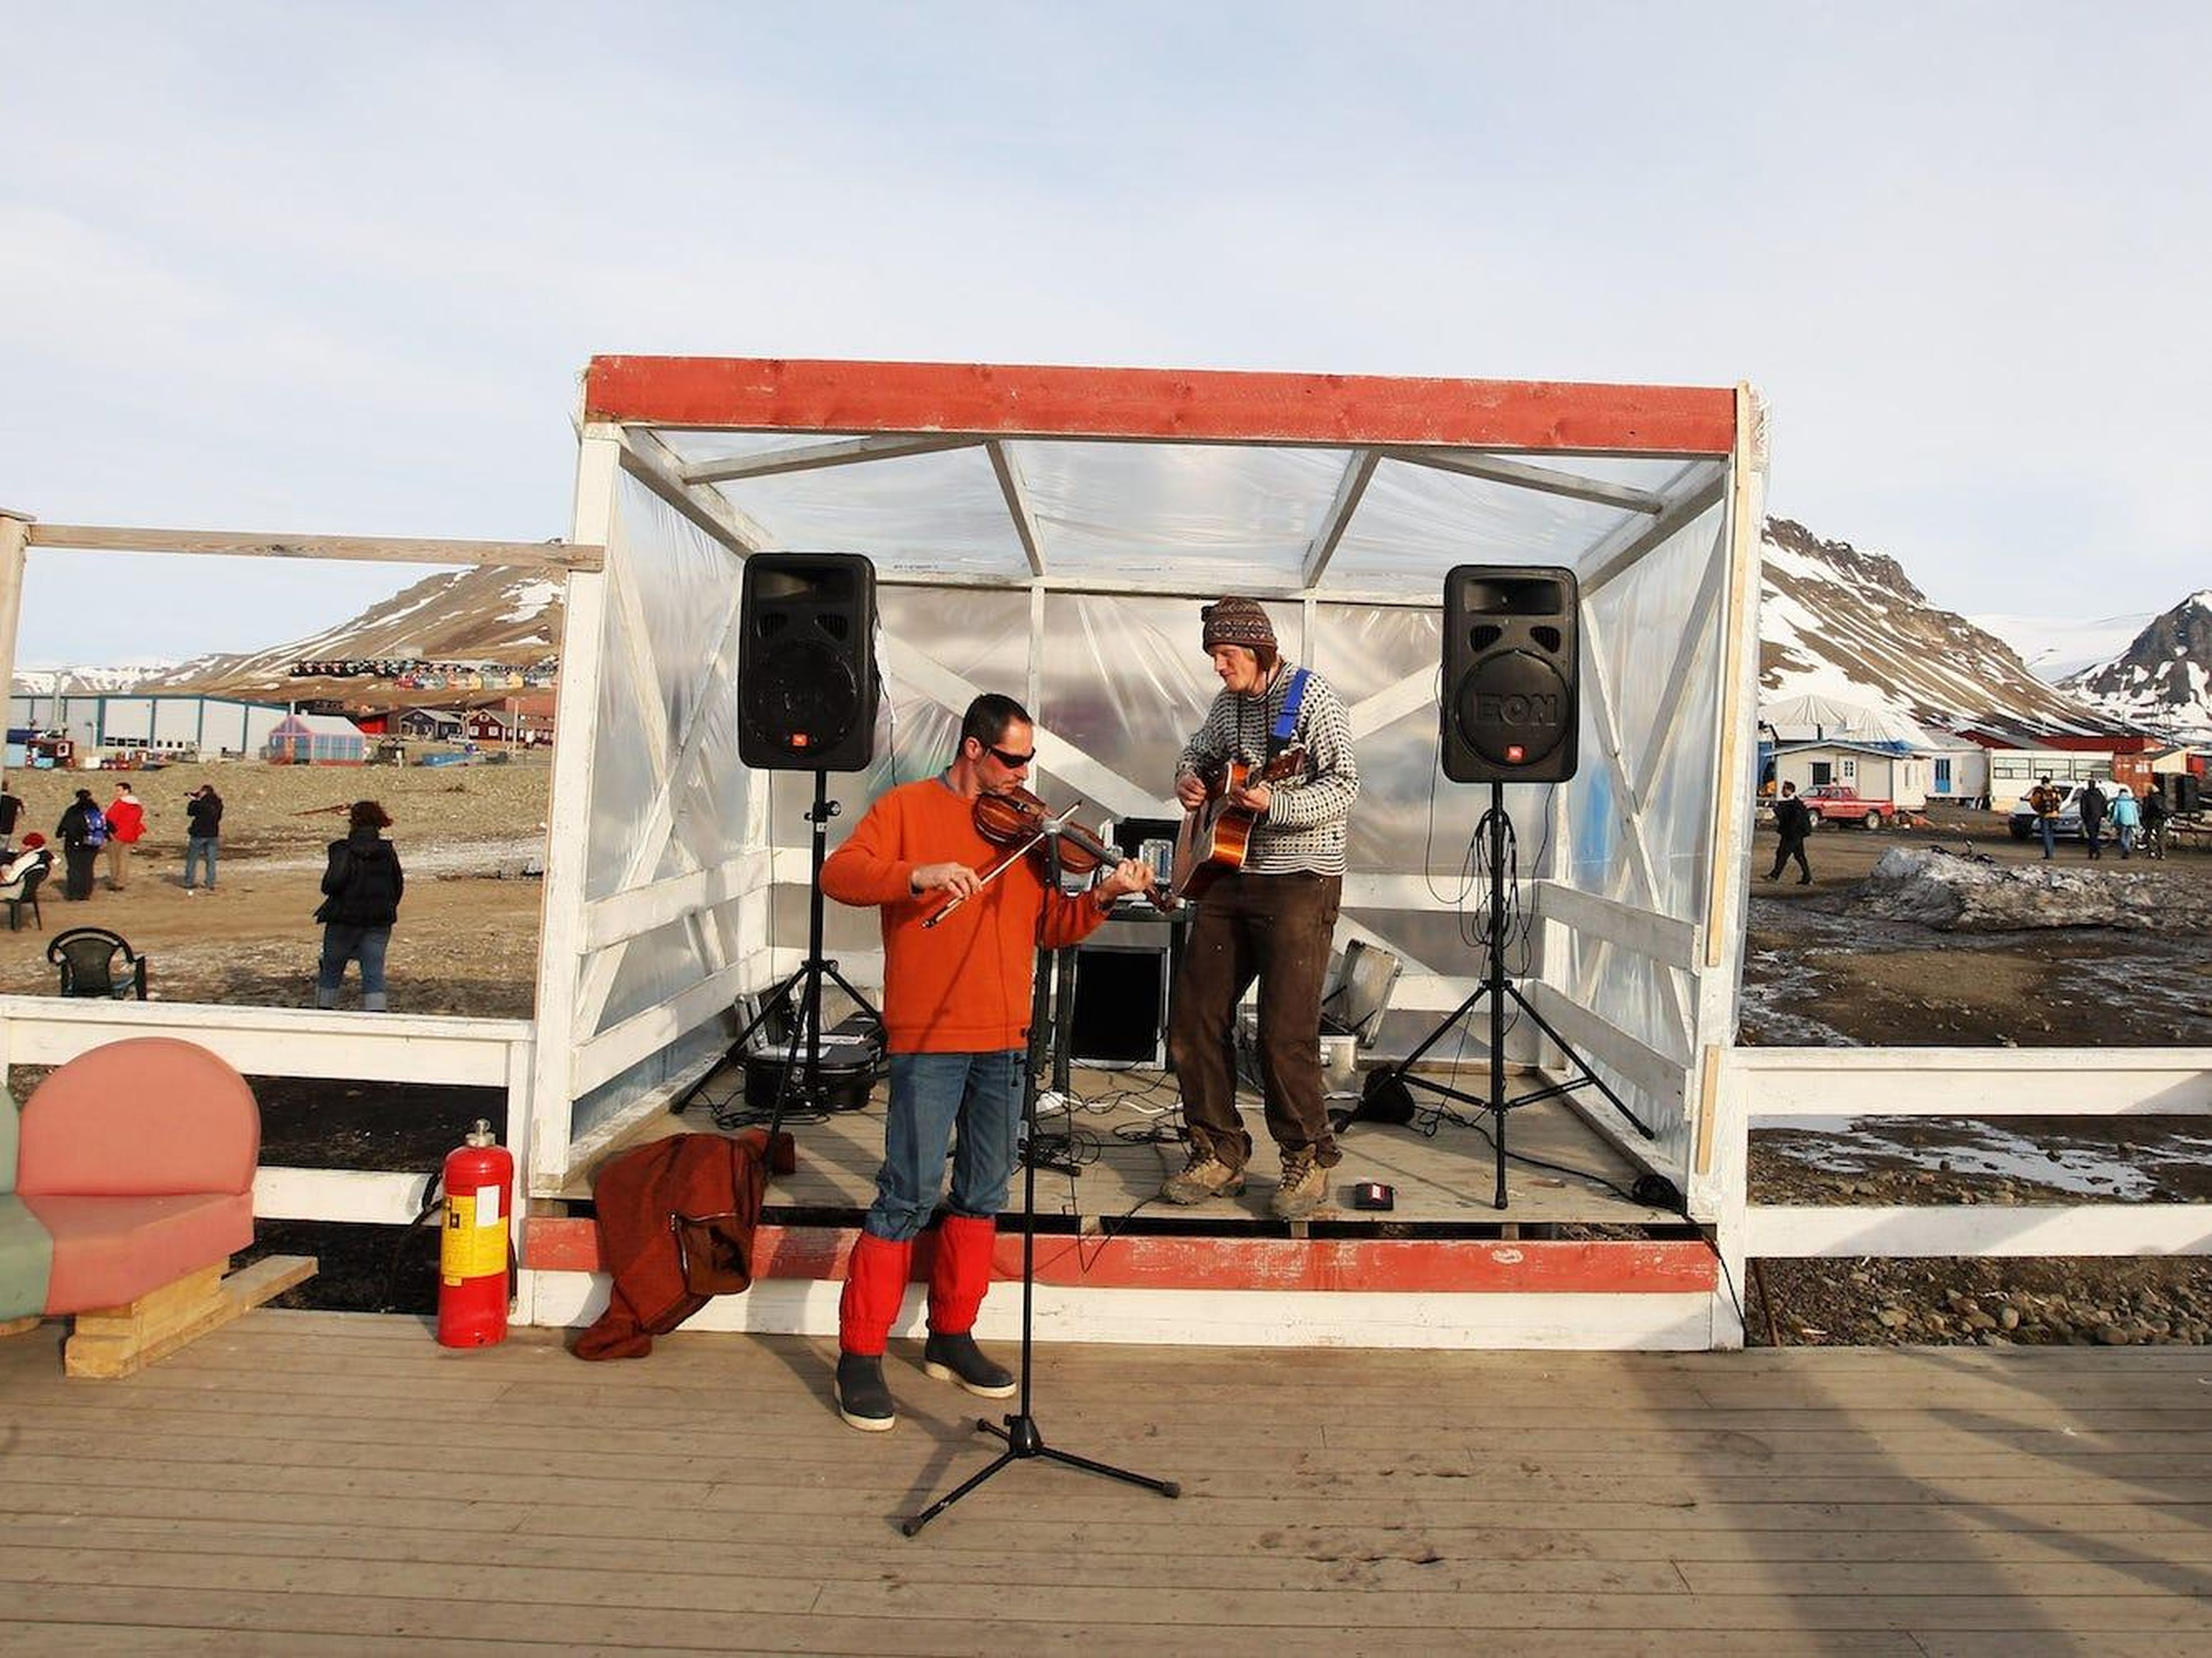 Una celebración de verano en Longyearbyen.